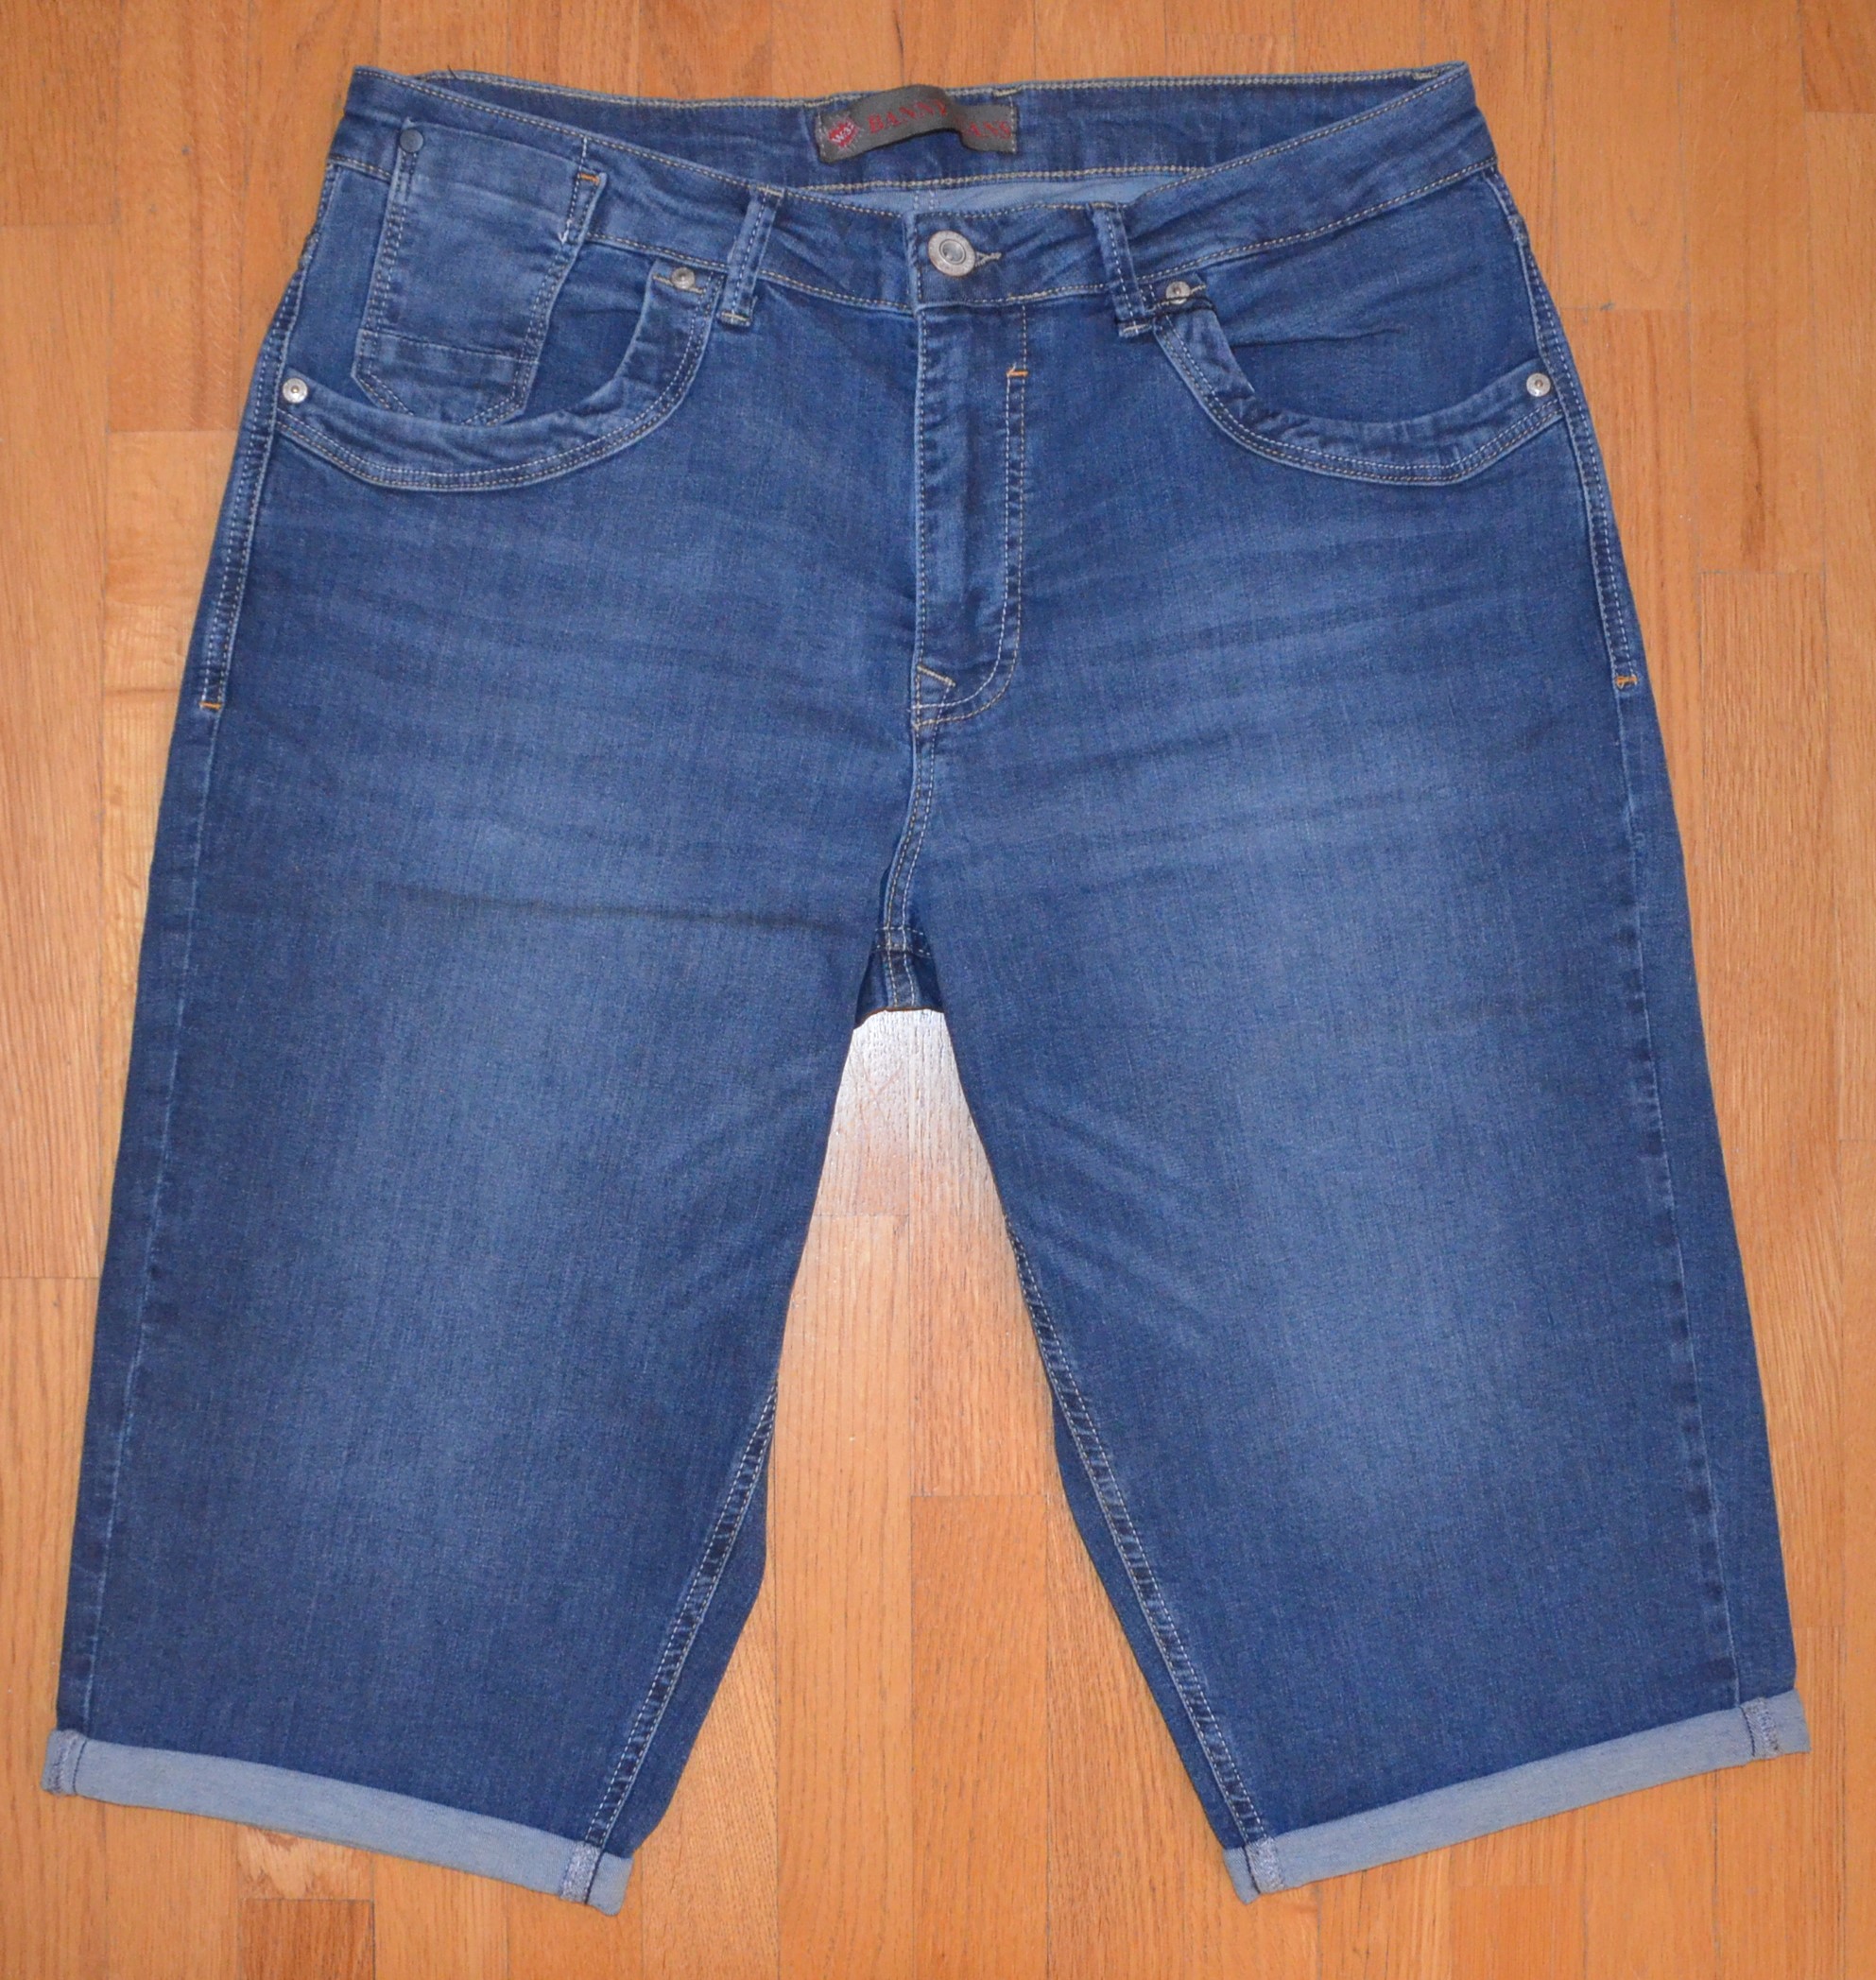 Pánské džínové šortky Banny Jeans P-2706 Velikost: 35